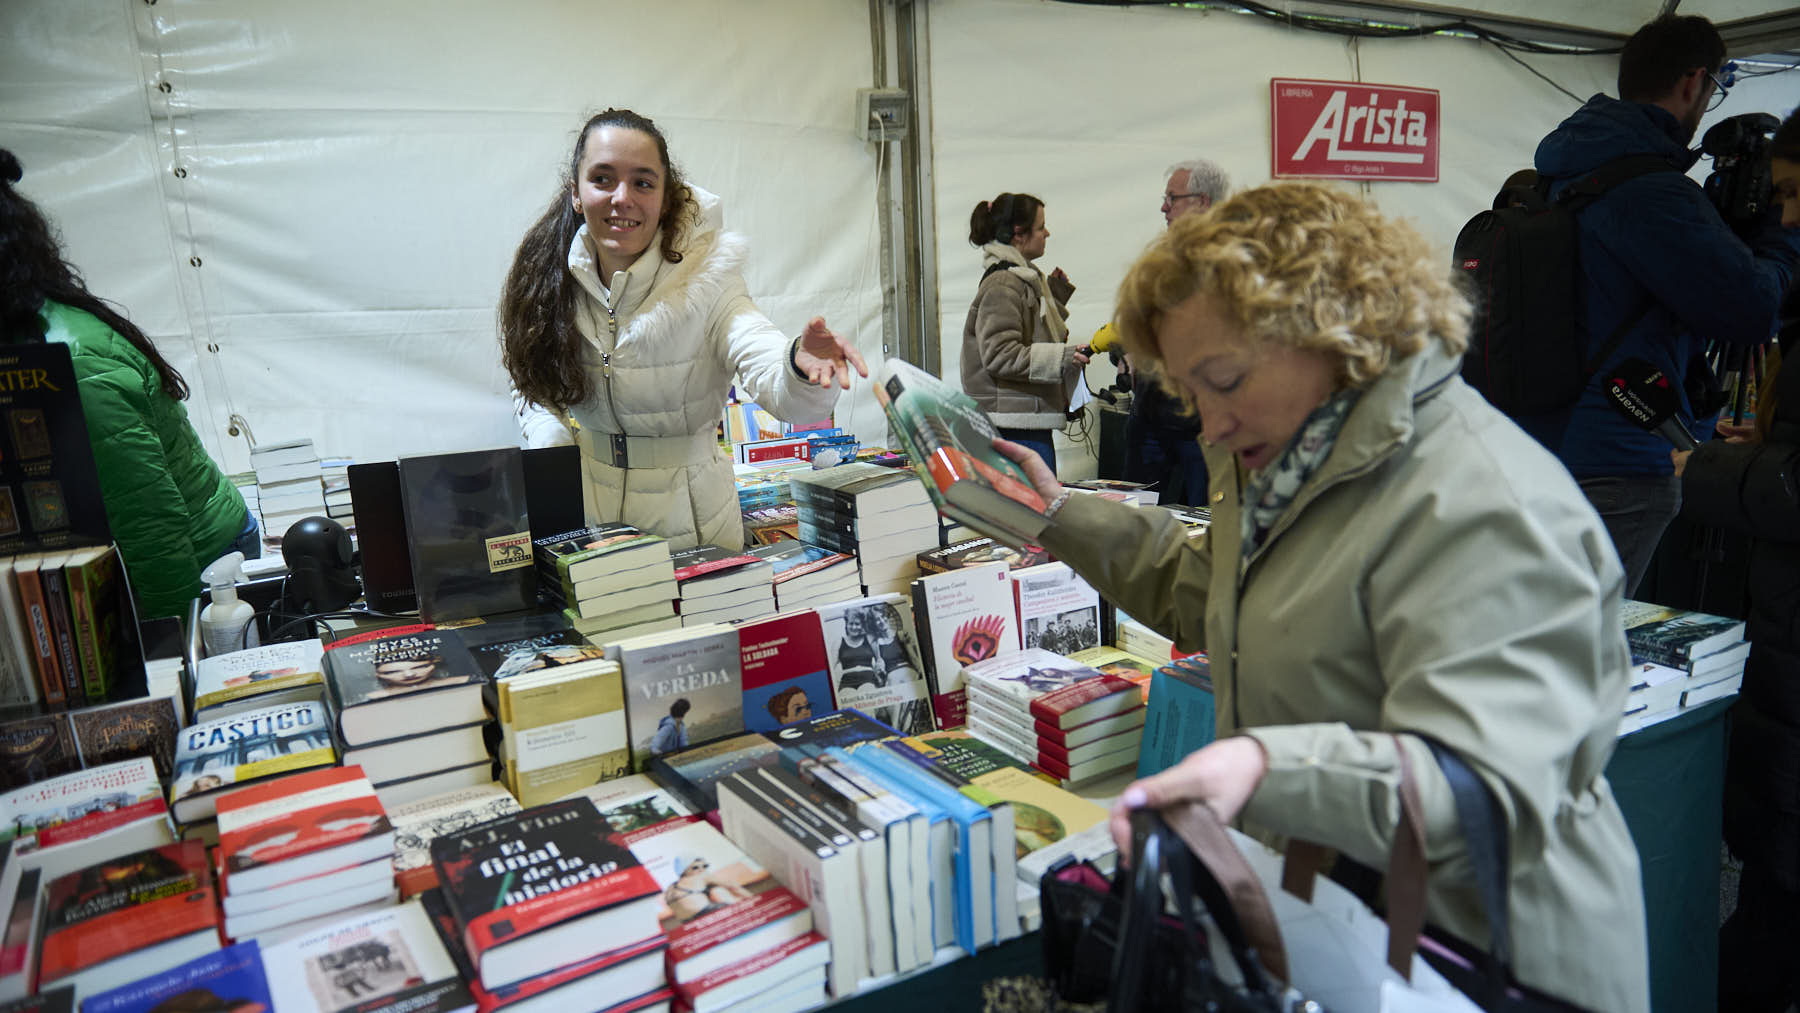 Comienza la Feria del Libro en Pamplona: horarios, descuentos y curiosidades